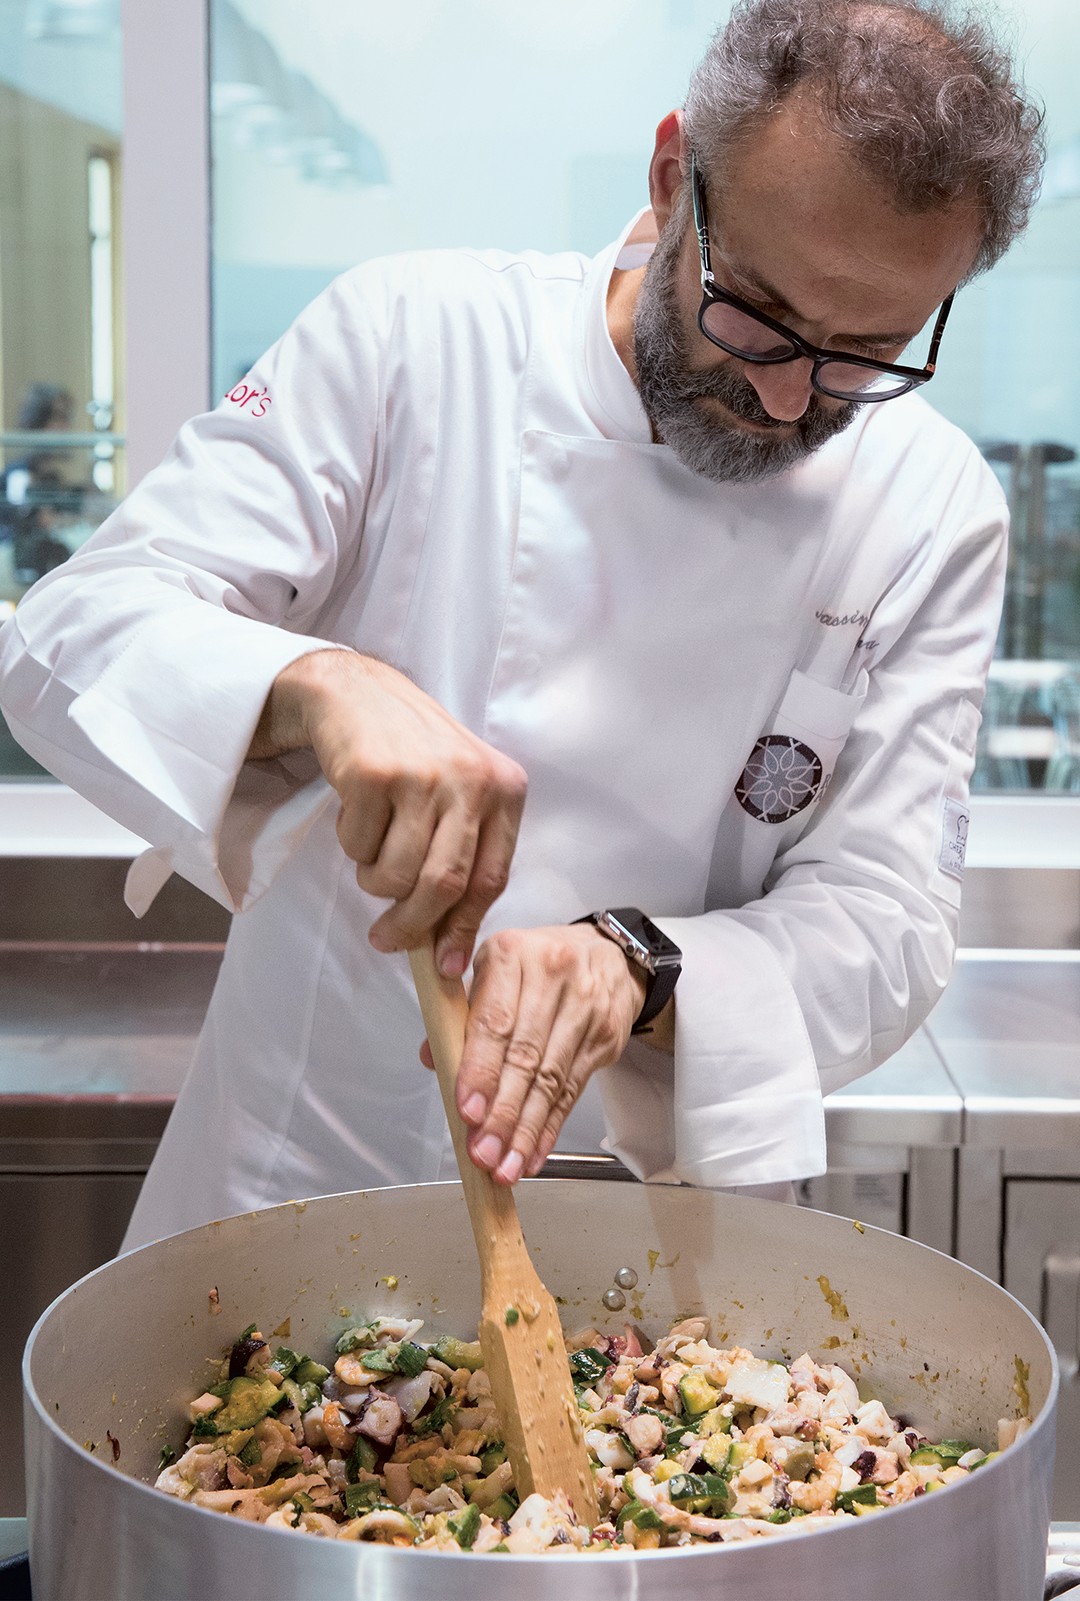 O chefão fica em casa: Massimo Bottura preparando panelão de feijão com verduras em seu Refettorio de Milão, hoje fechado por causa da pandemia. Ele agora ensina as mesmas receitas fáceis (usando sobras) no IGTV (Foto: divulgação)